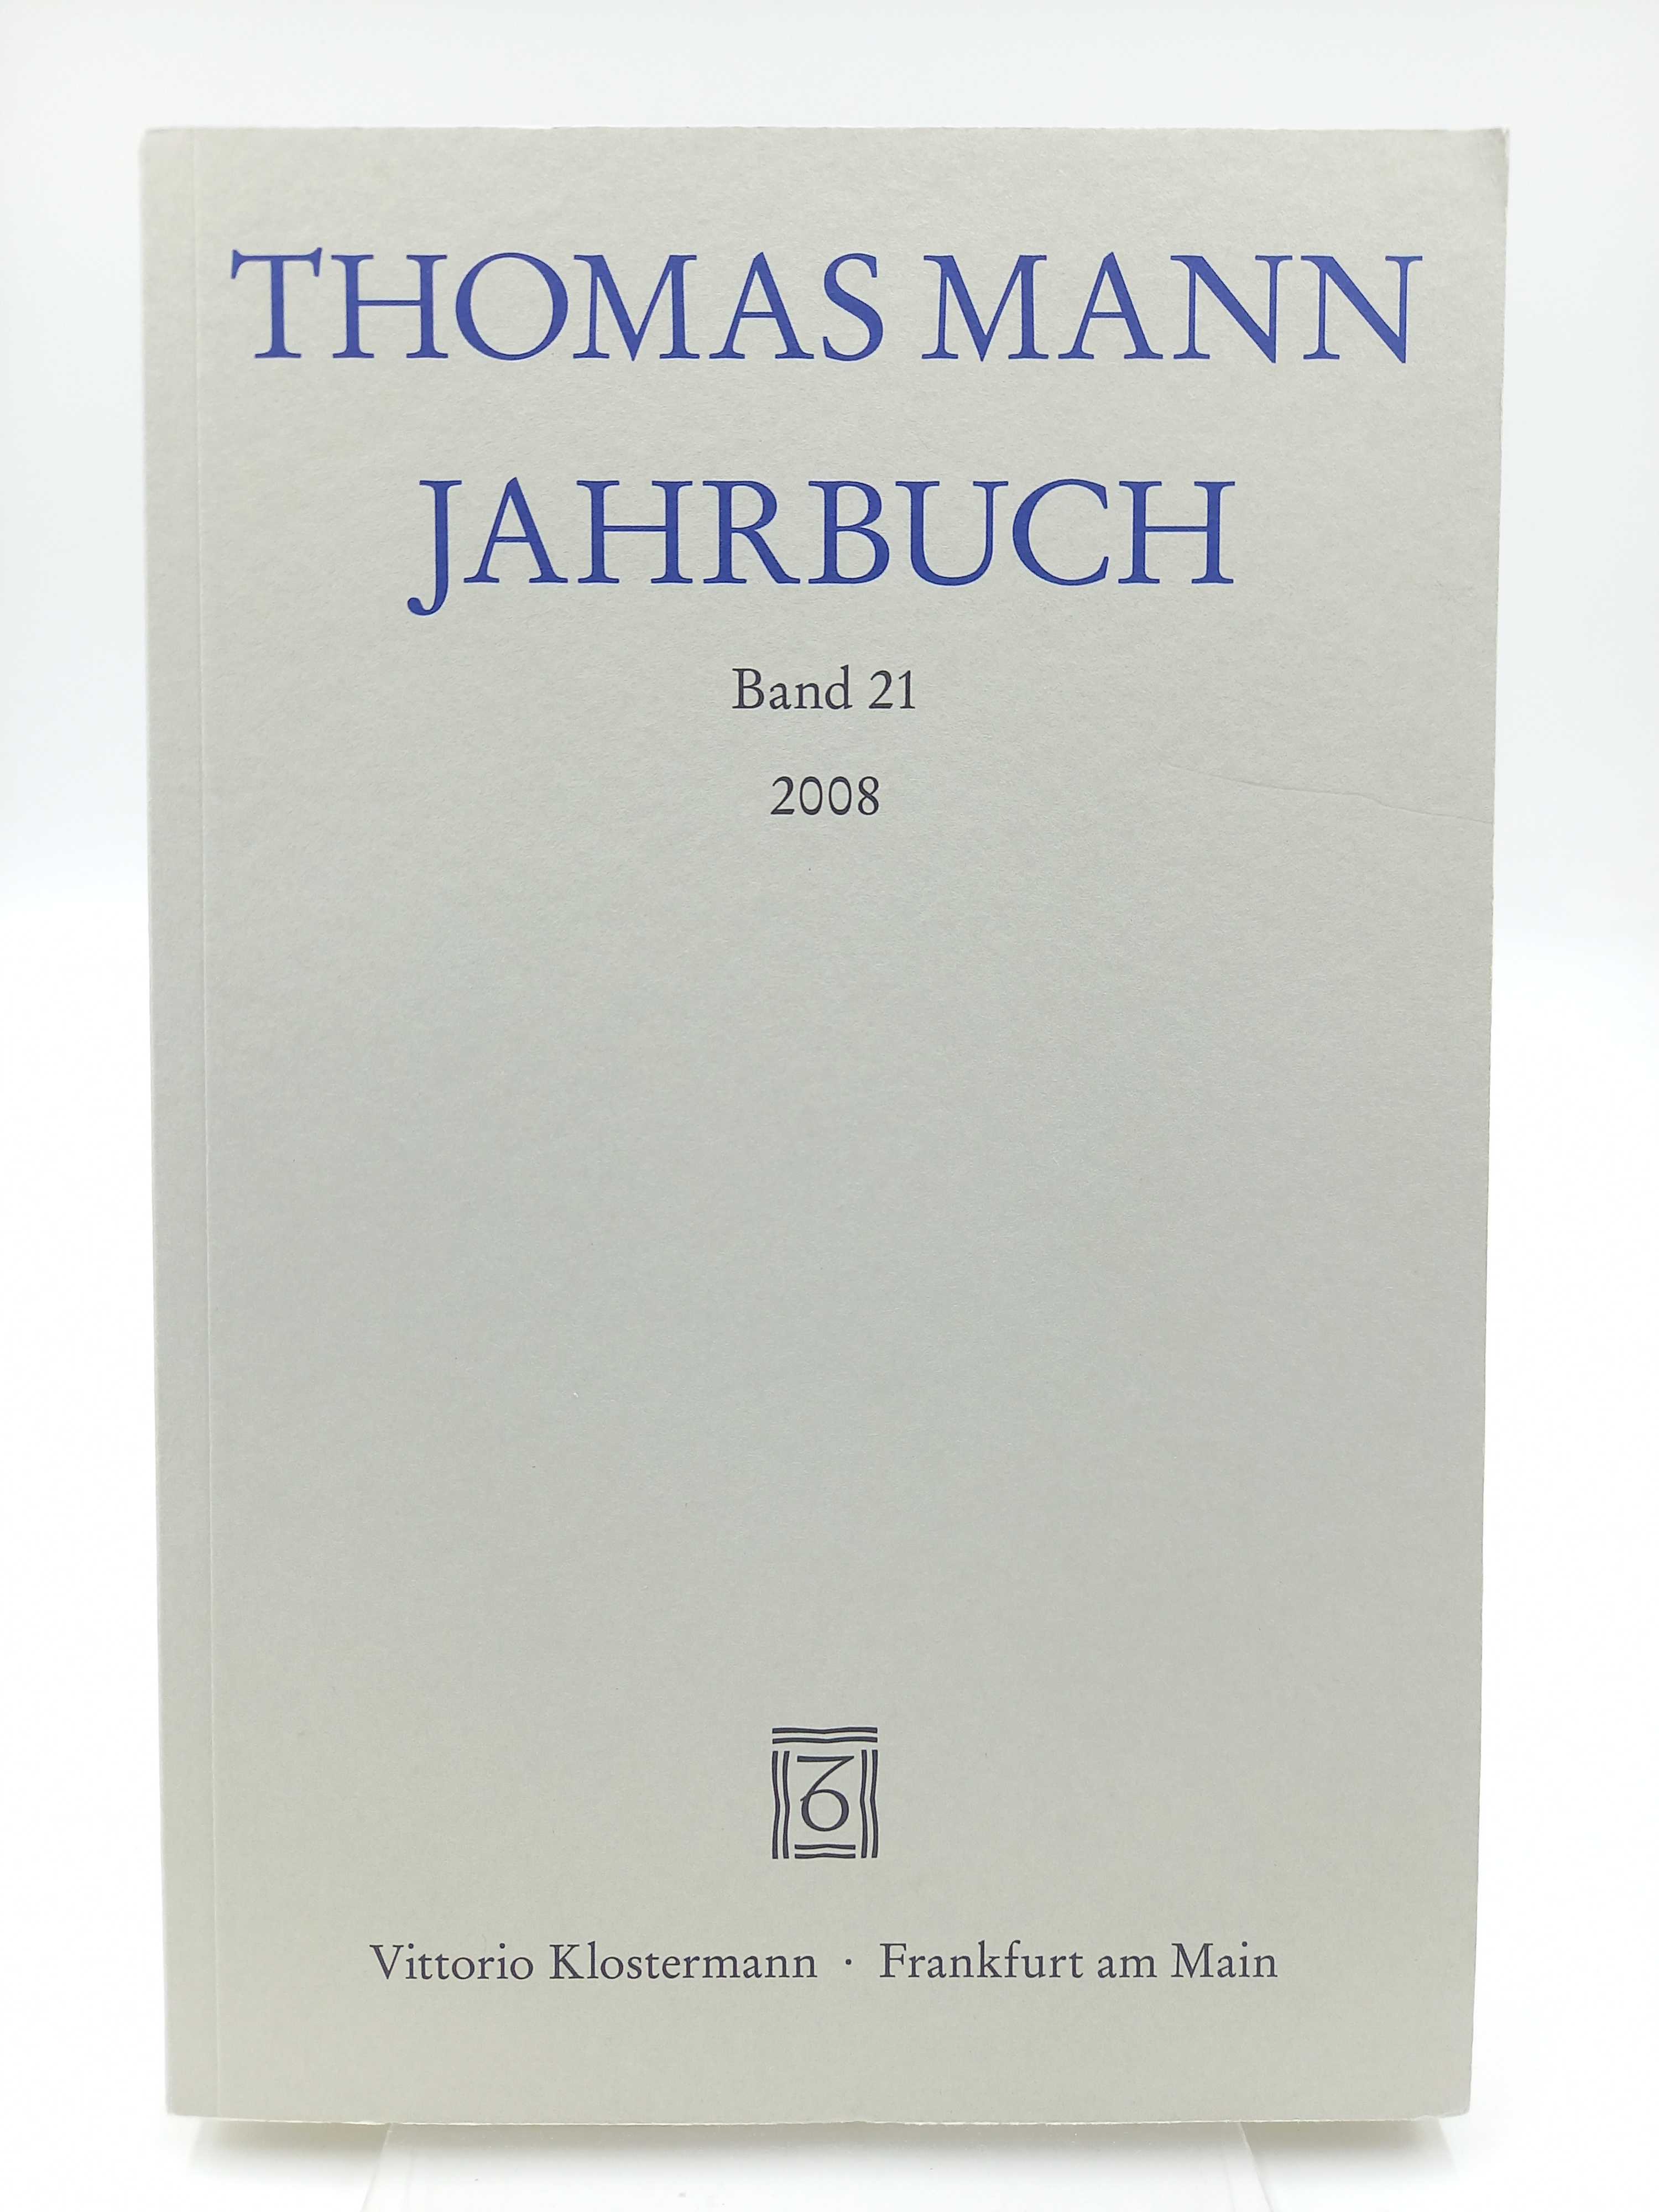 Thomas Mann Jahrbuch, Band 21 / 2008 - Heftrich, Eckhard und Hans Wysling (Begr.) / Hg. Thomas Sprecher u.a. -